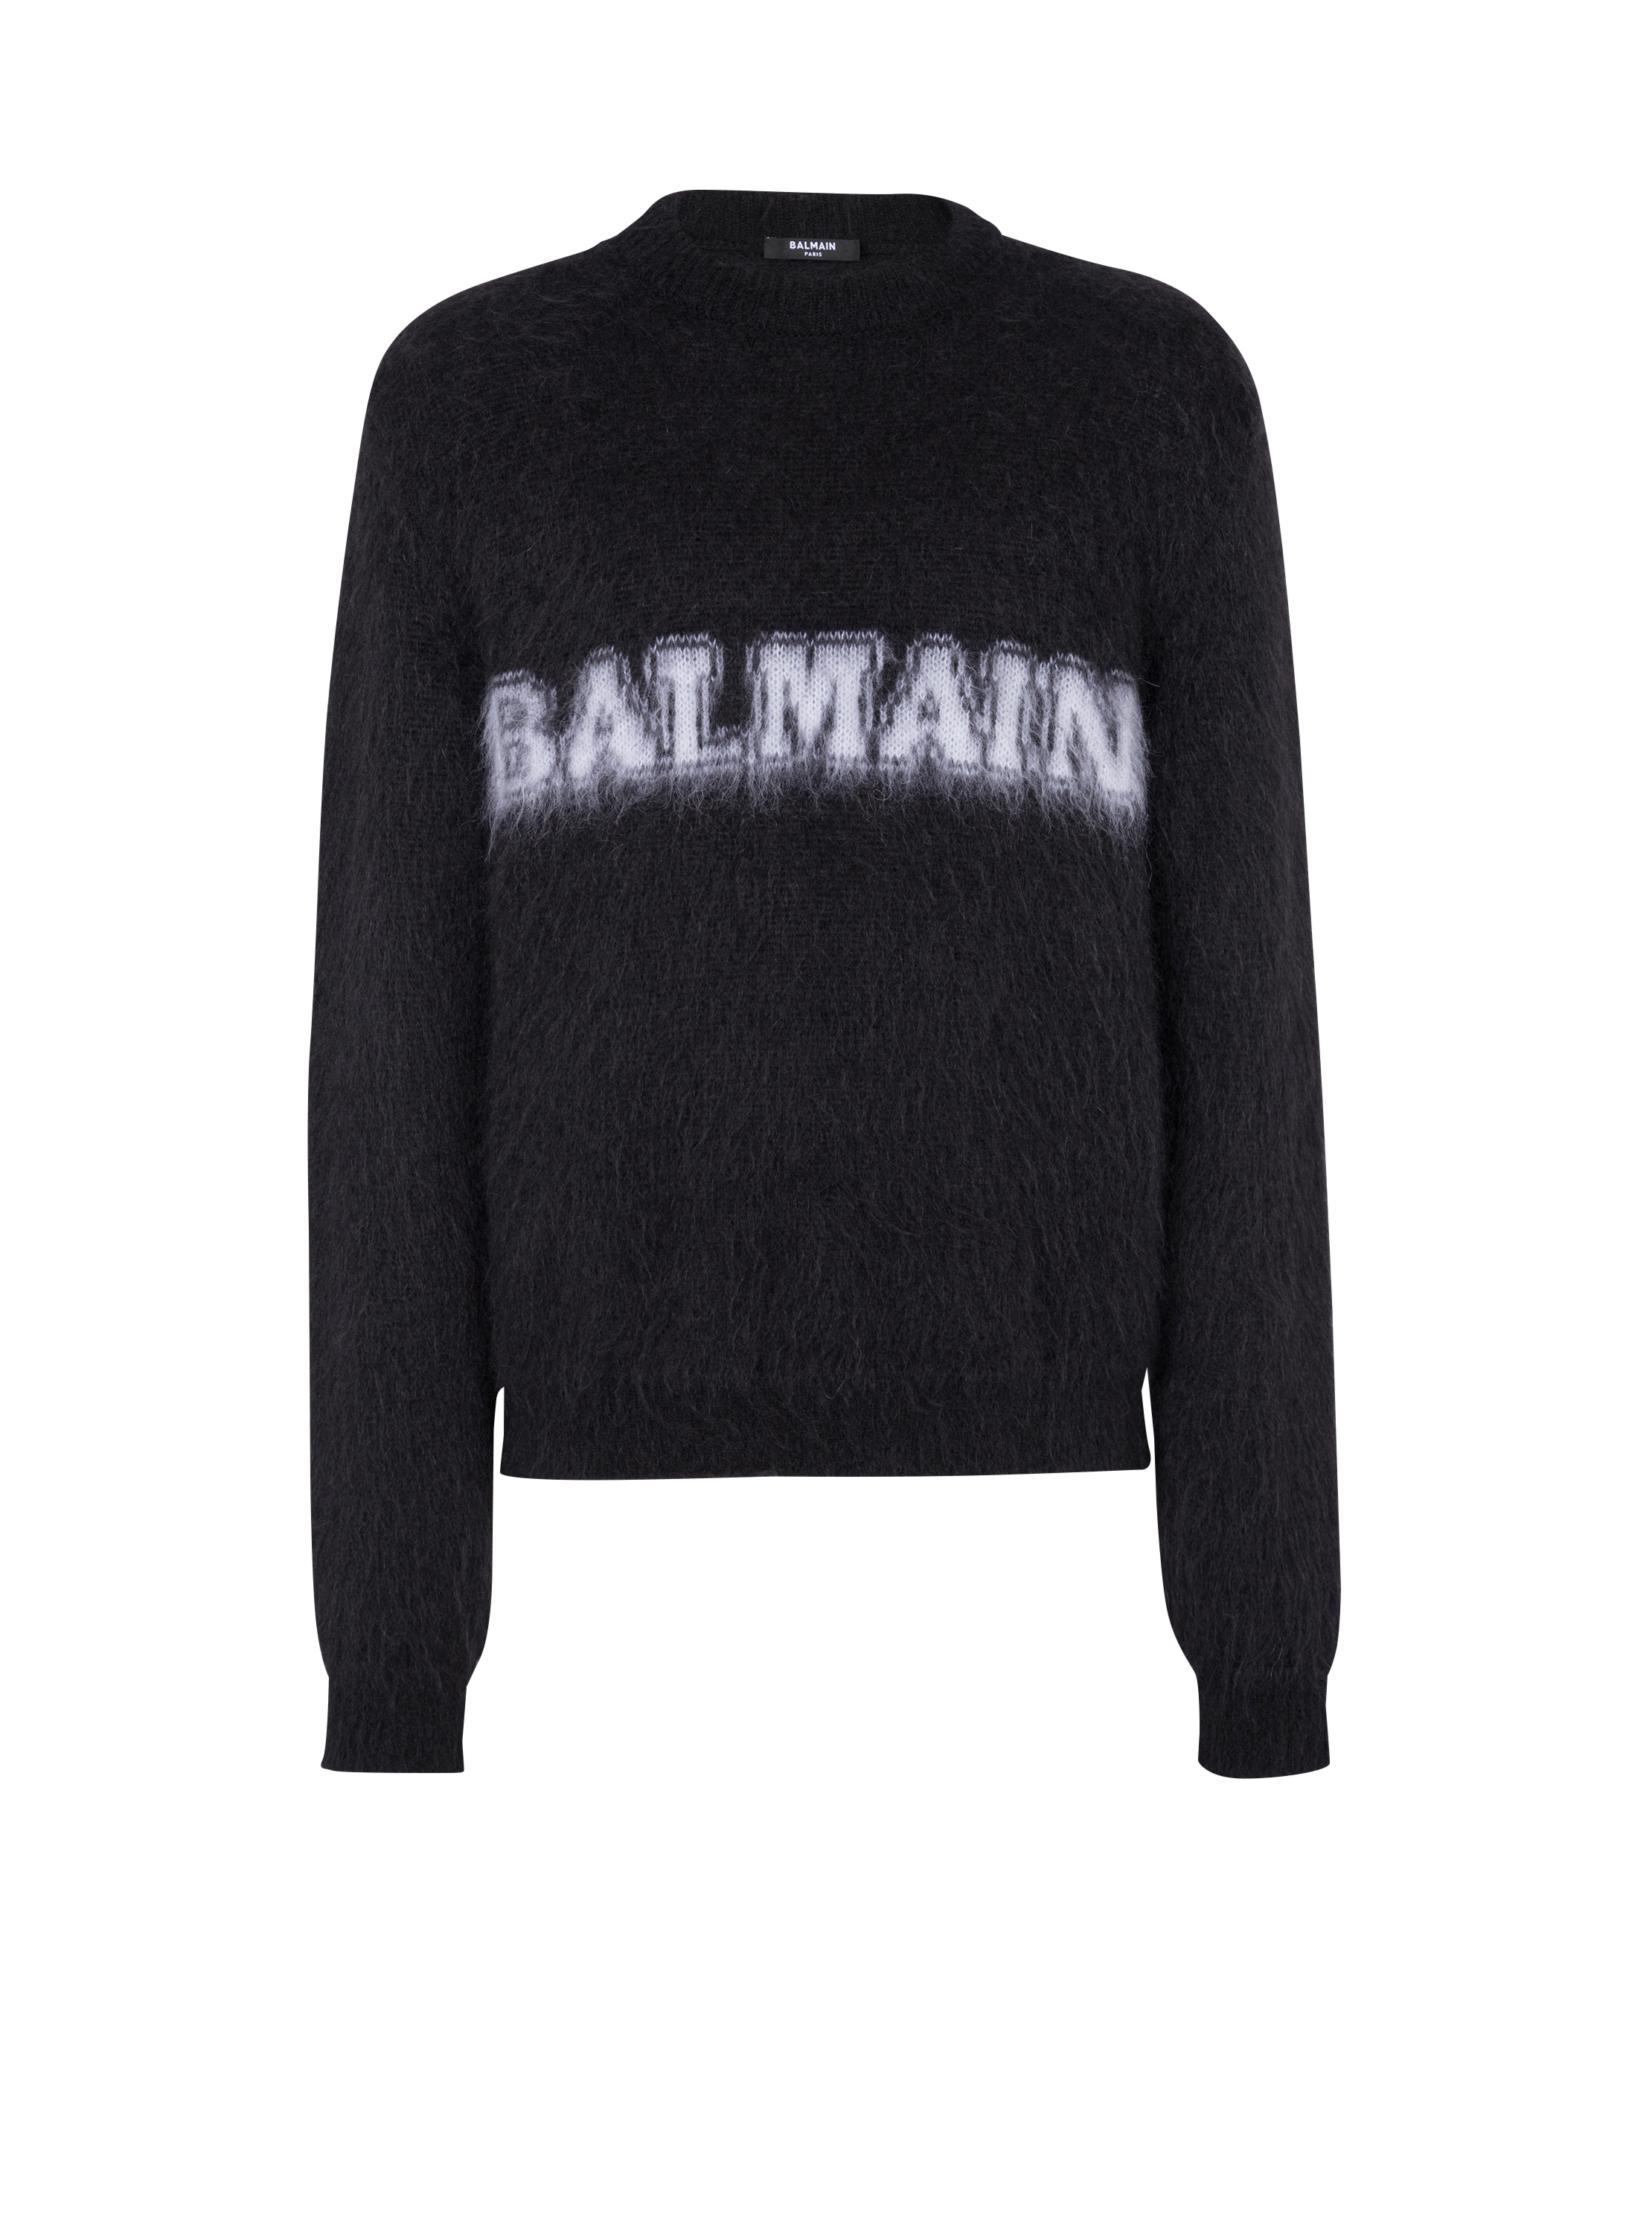 Retro Balmain jumper in brushed mohair, black, hi-res